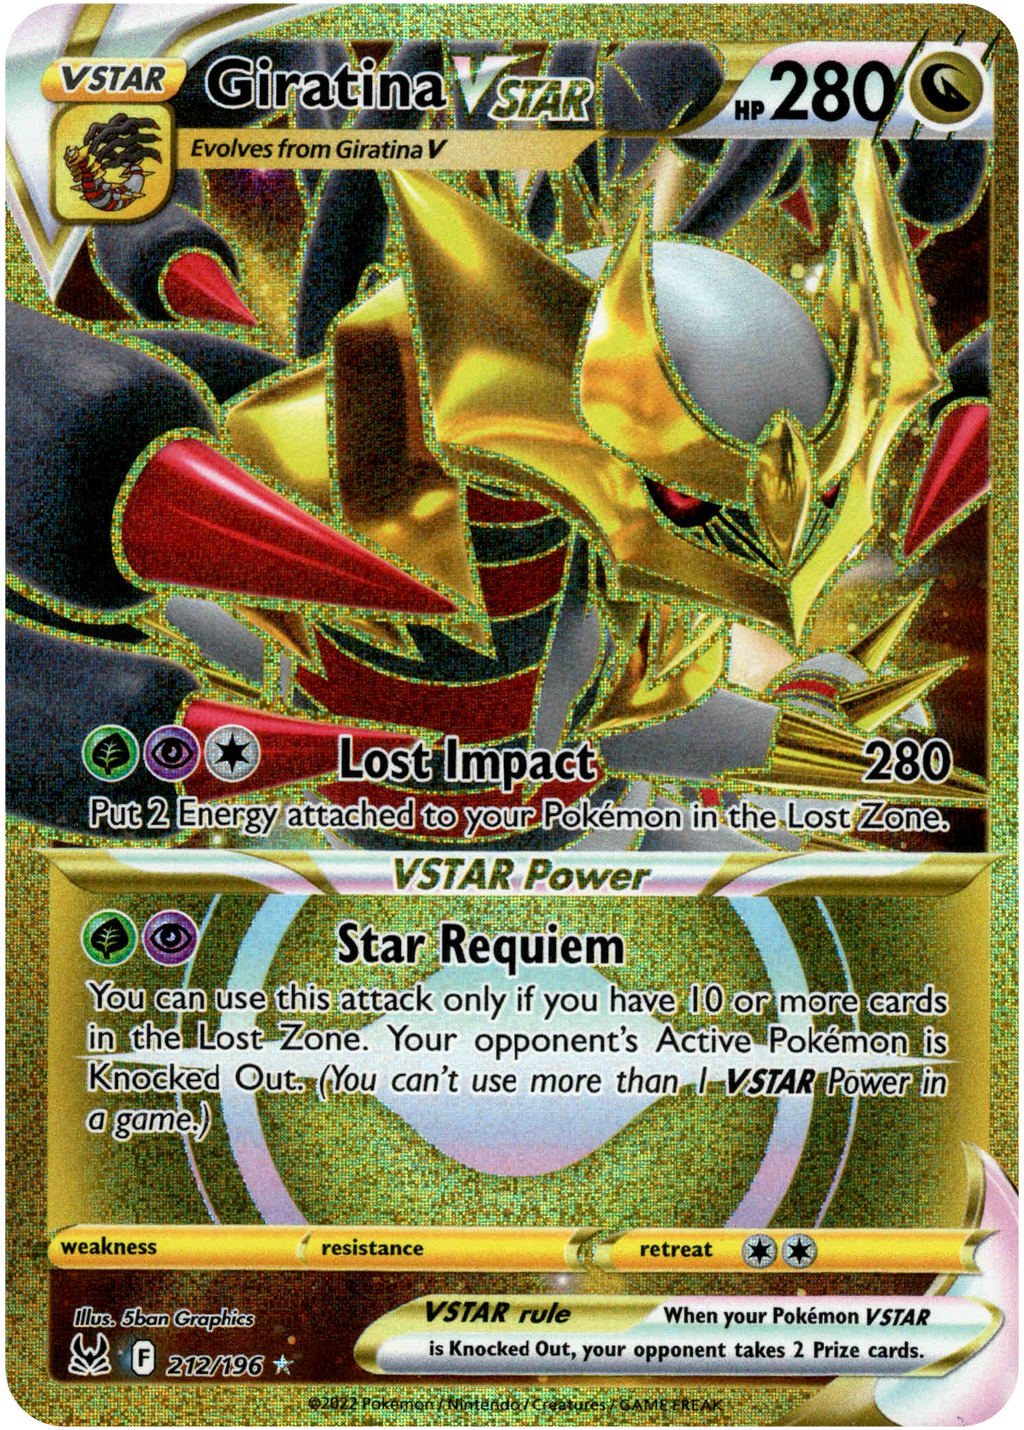 Pokemon - Giratina Vstar - 131/196 - Ultra Rare Card Lost Origin